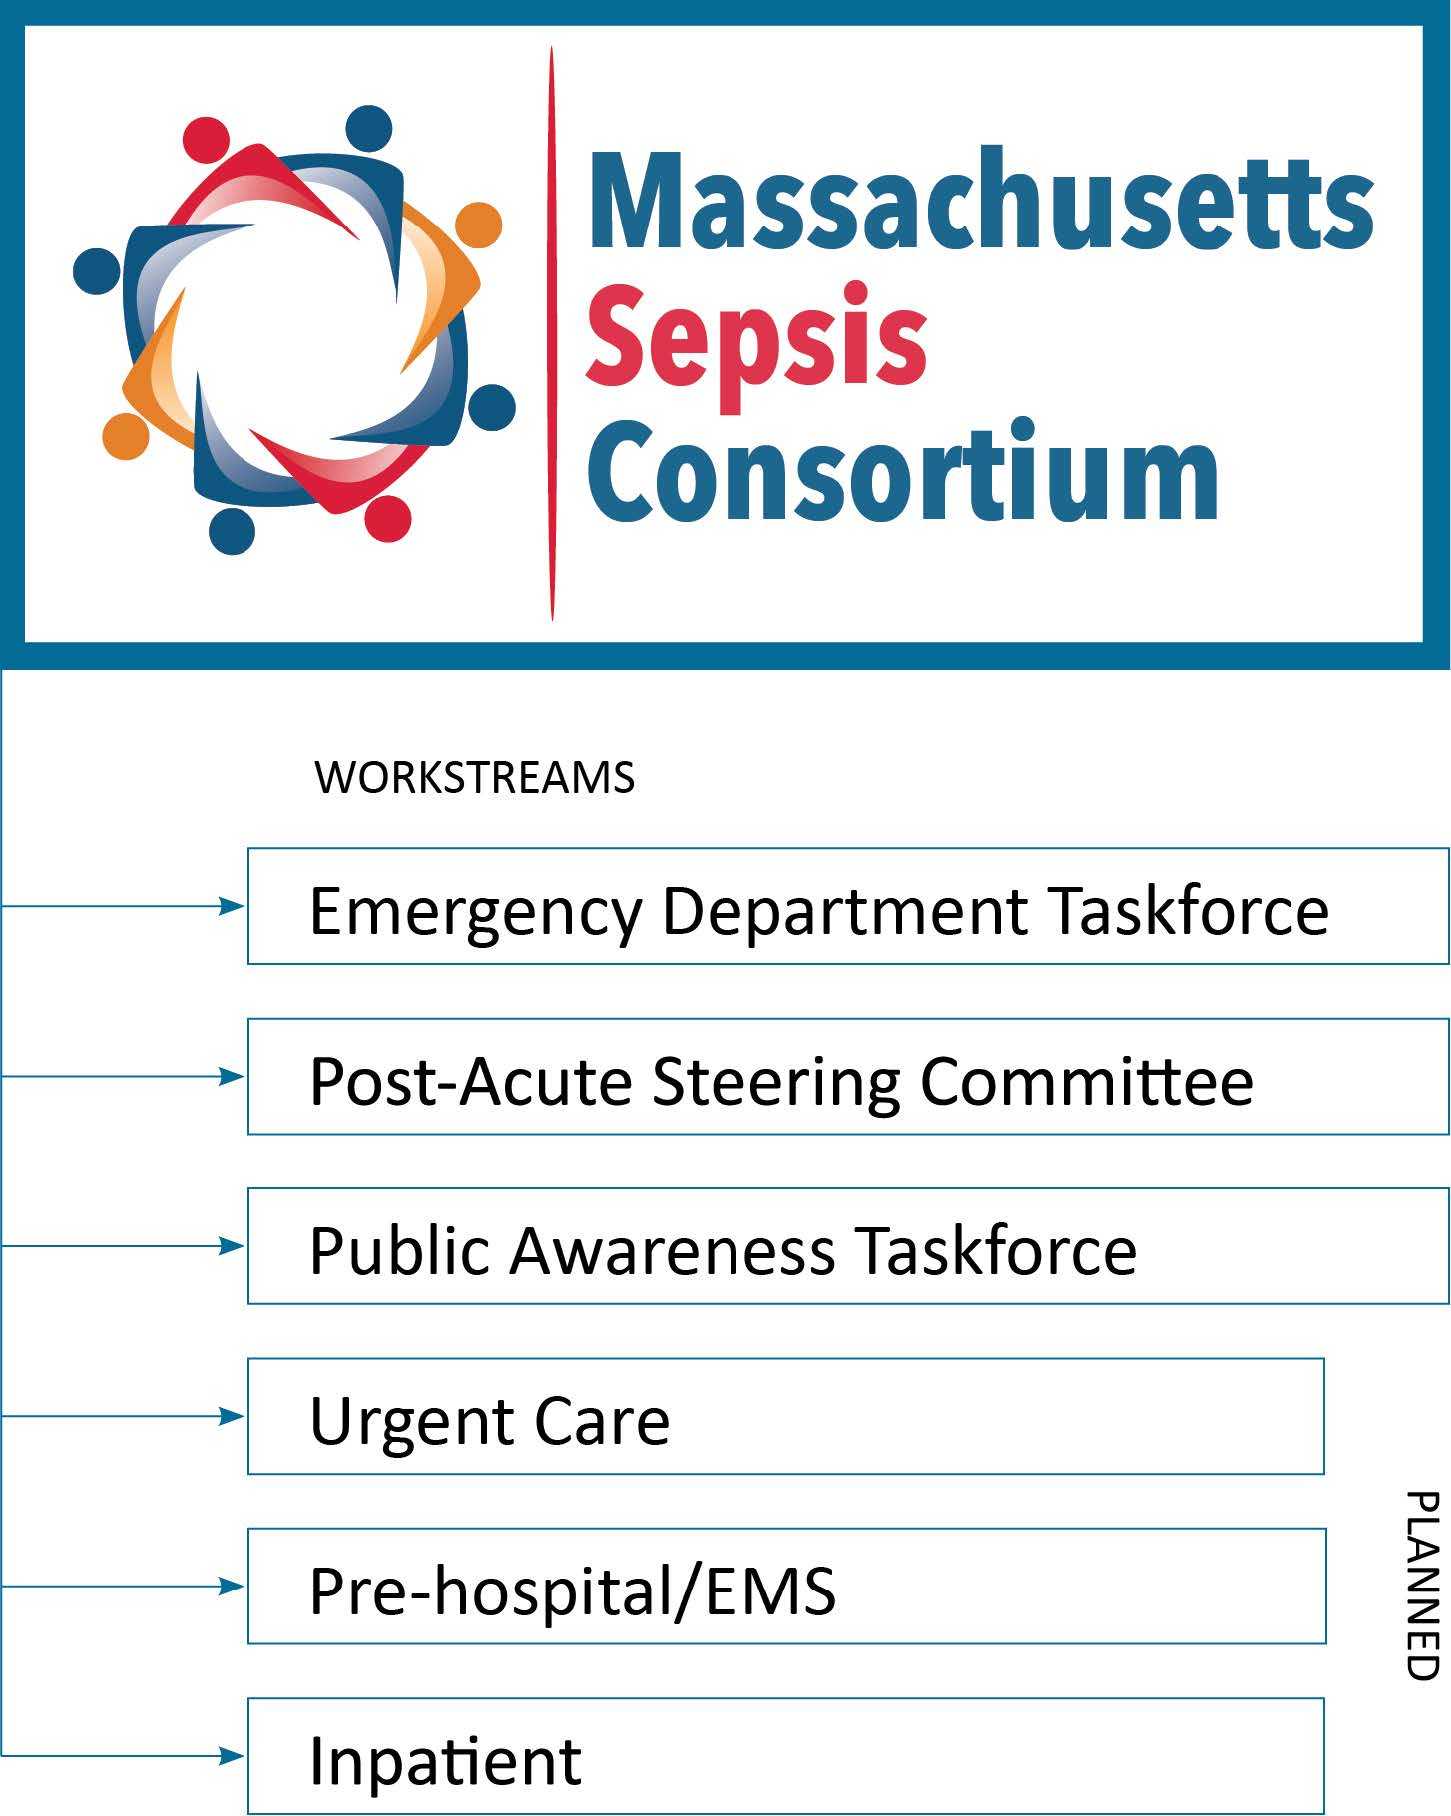 Sepsis Consortium workflow graphic